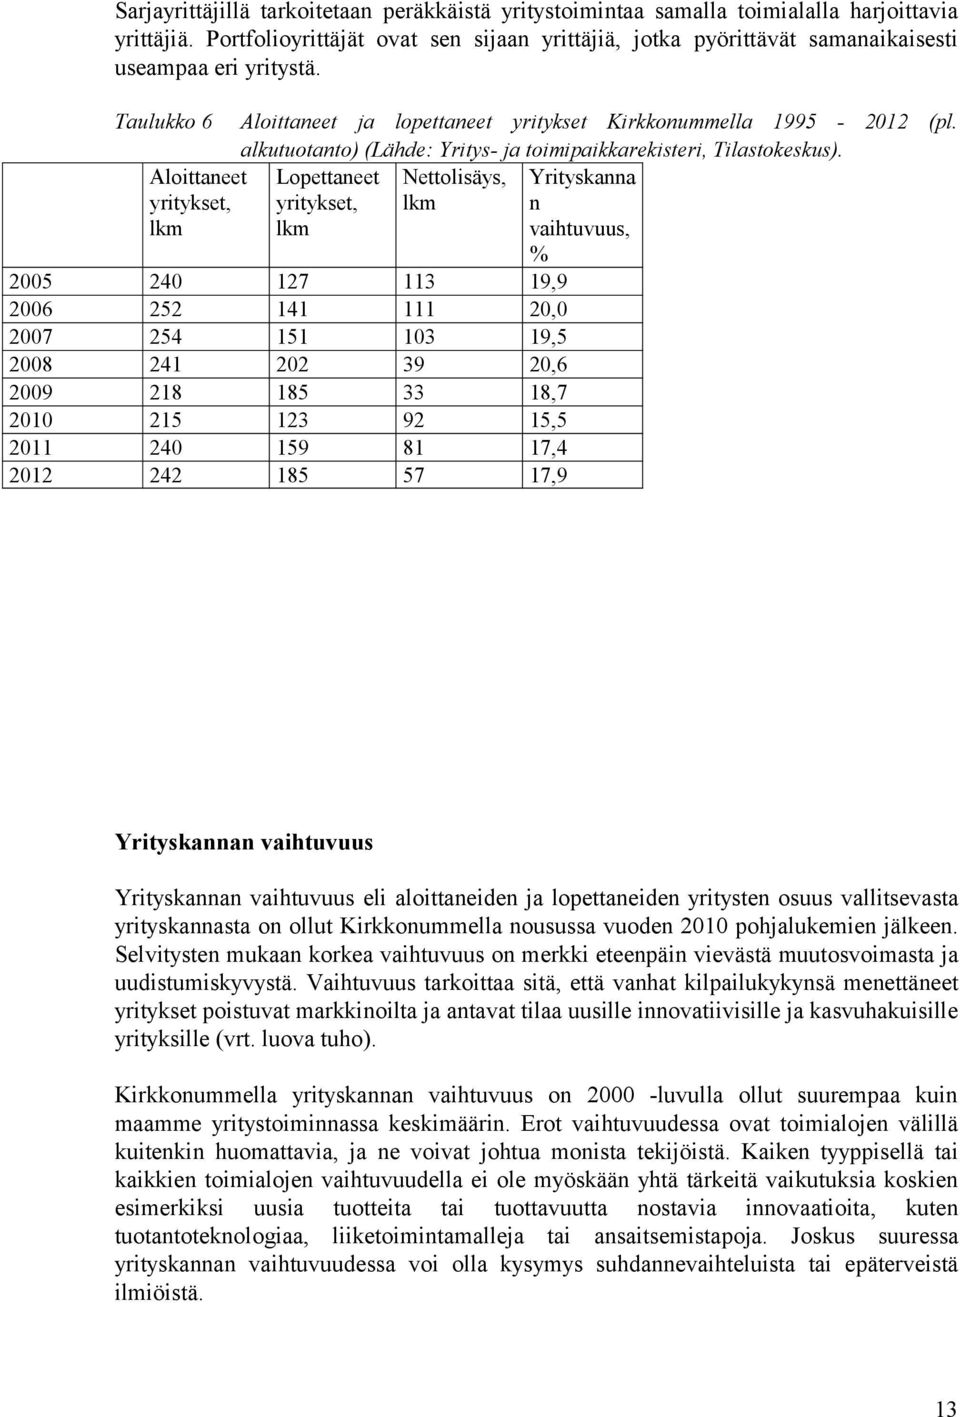 Taulukko 6 Aloittaneet yritykset, Aloittaneet ja lopettaneet yritykset Kirkkonummella 1995-2012 (pl. alkutuotanto) (Lähde: Yritys- ja toimipaikkarekisteri, Tilastokeskus).